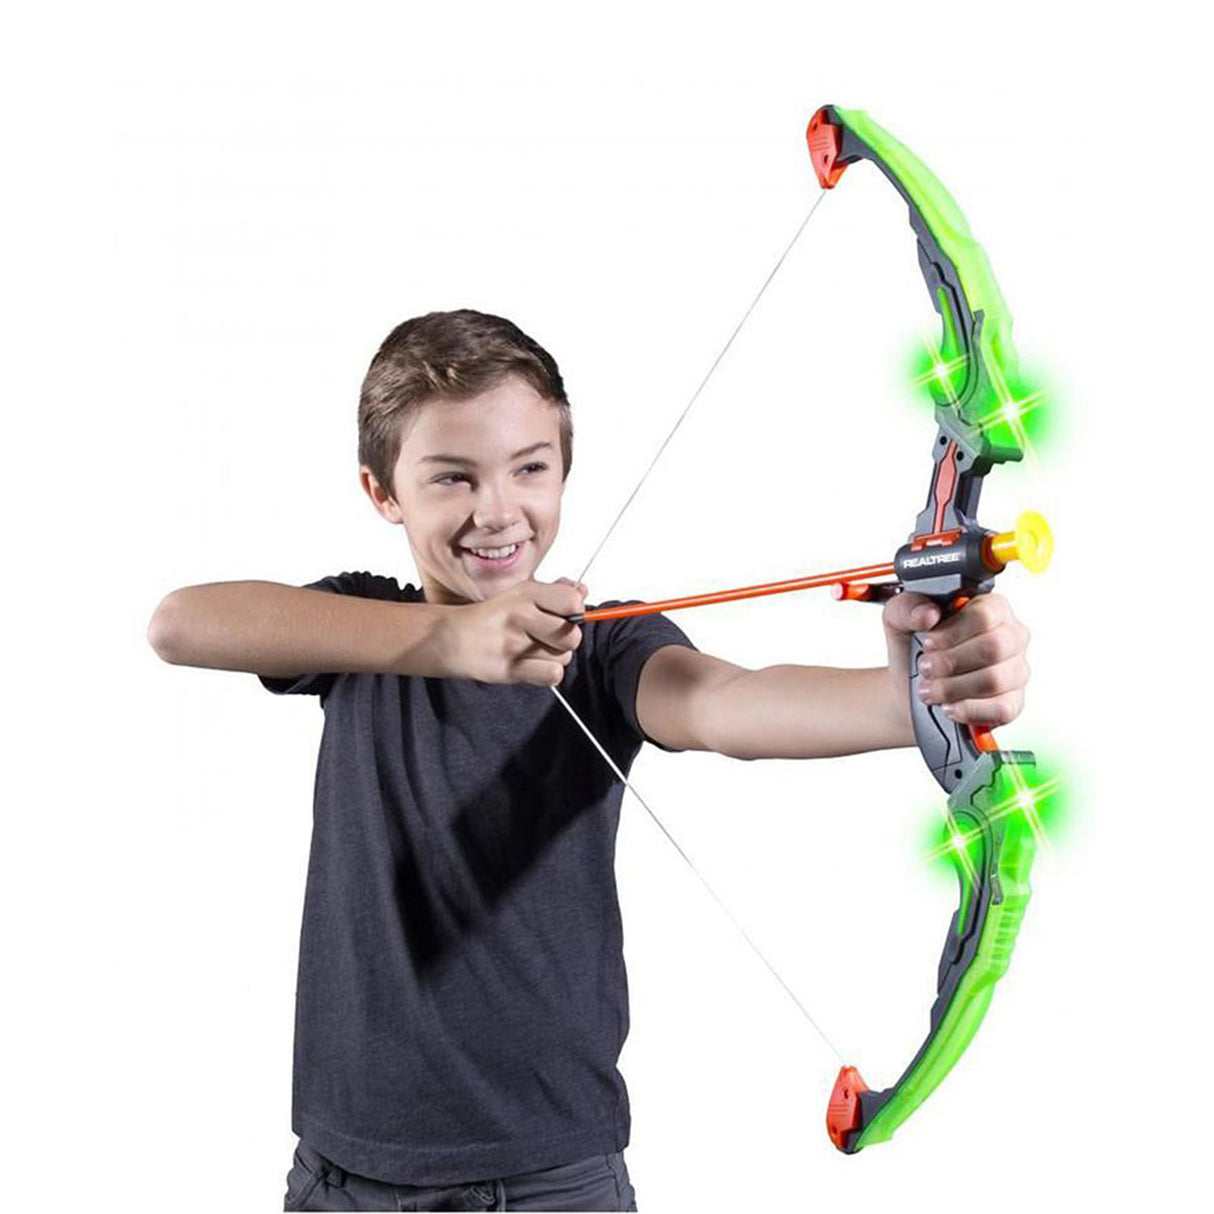 All Brands Toys Archery Set Light Up